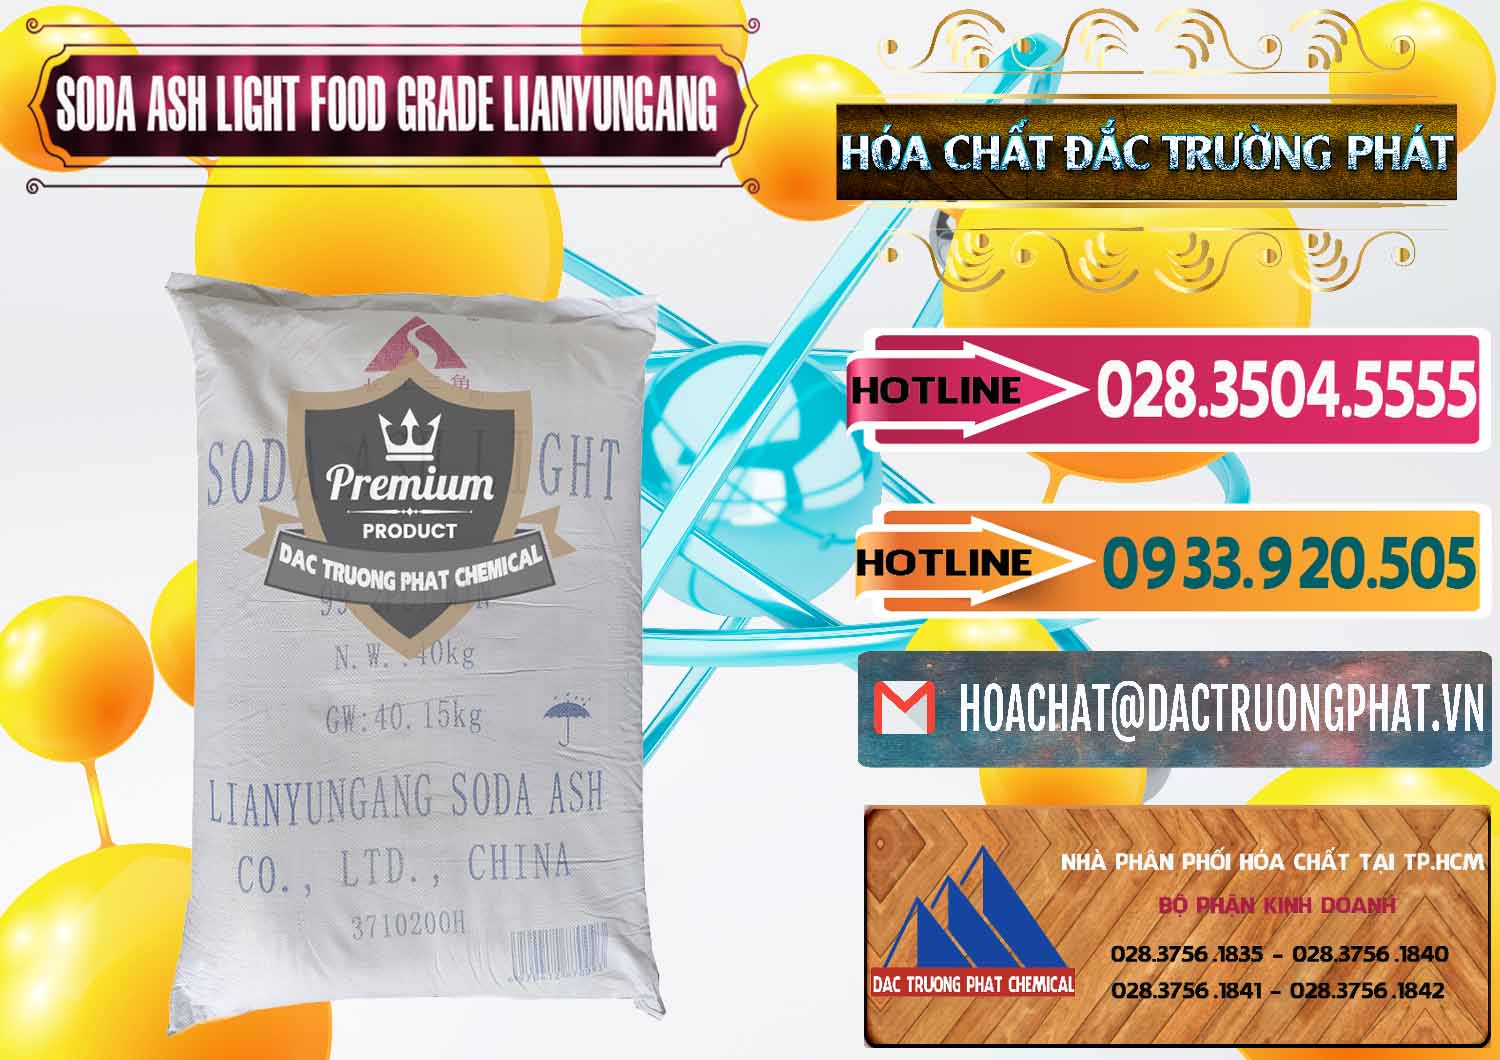 Nơi chuyên phân phối ( bán ) Soda Ash Light - NA2CO3 Food Grade Lianyungang Trung Quốc - 0222 - Chuyên kinh doanh & phân phối hóa chất tại TP.HCM - dactruongphat.vn